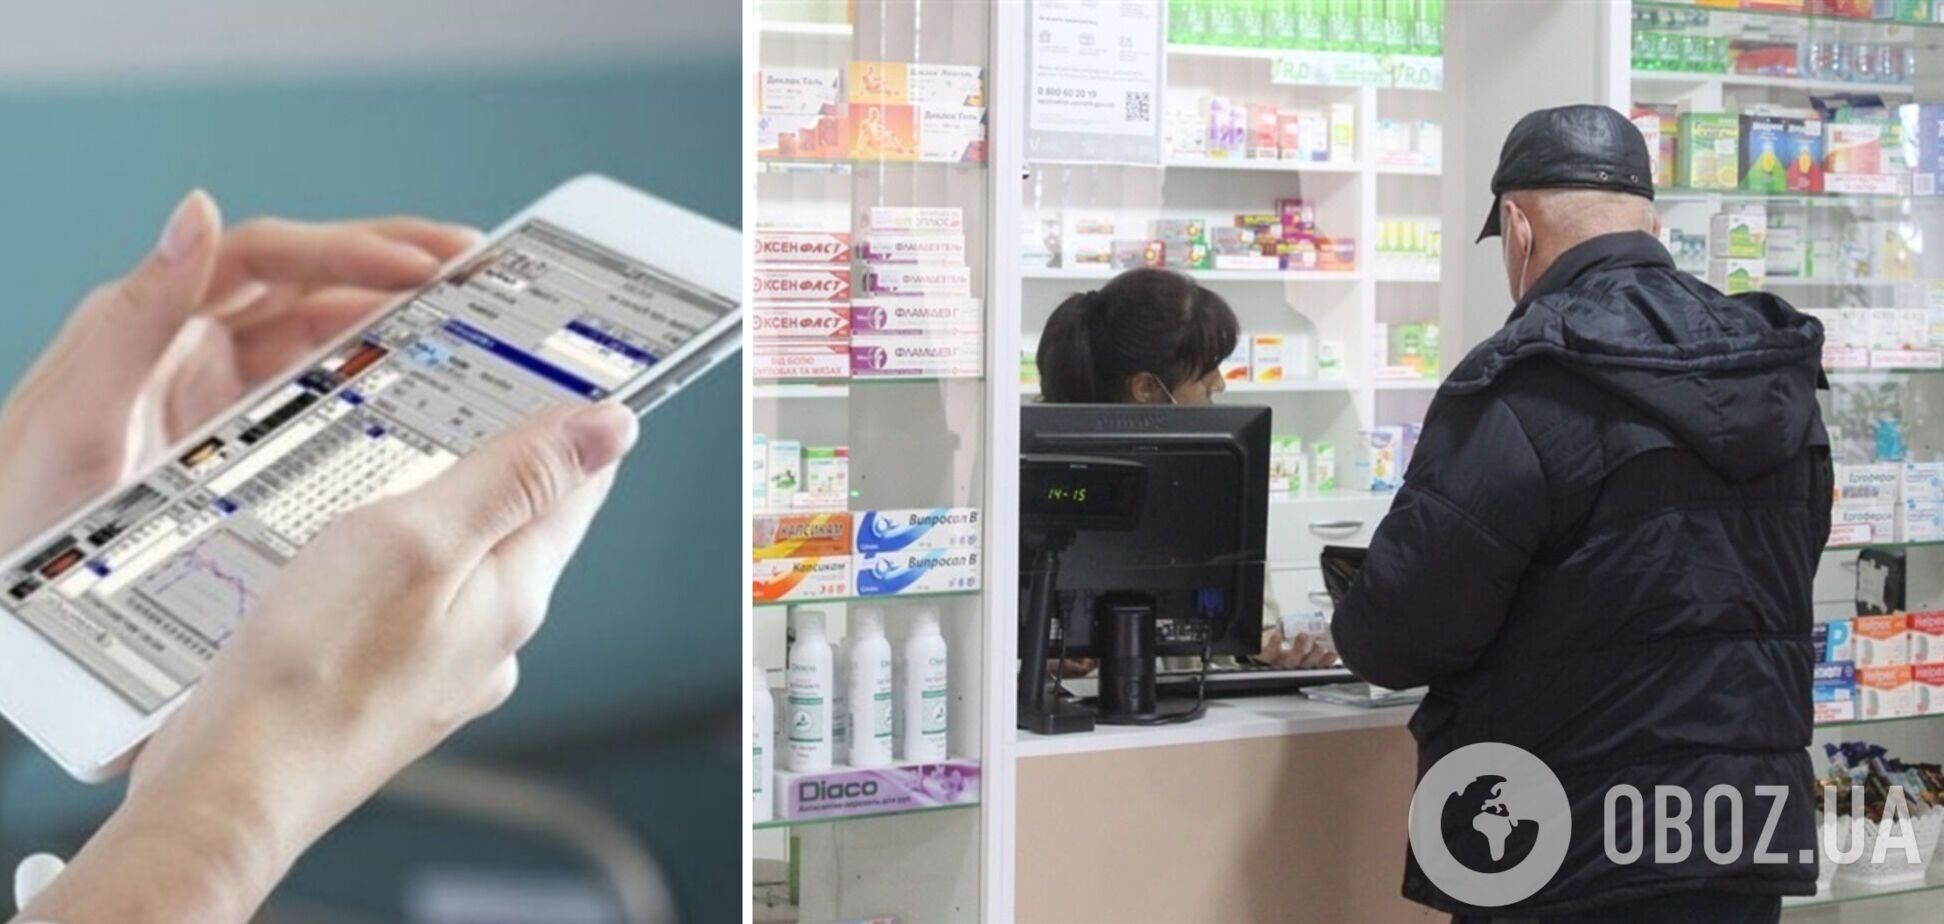 С апреля лекарства будут продавать в аптеках по электронному рецепту – Минздрав